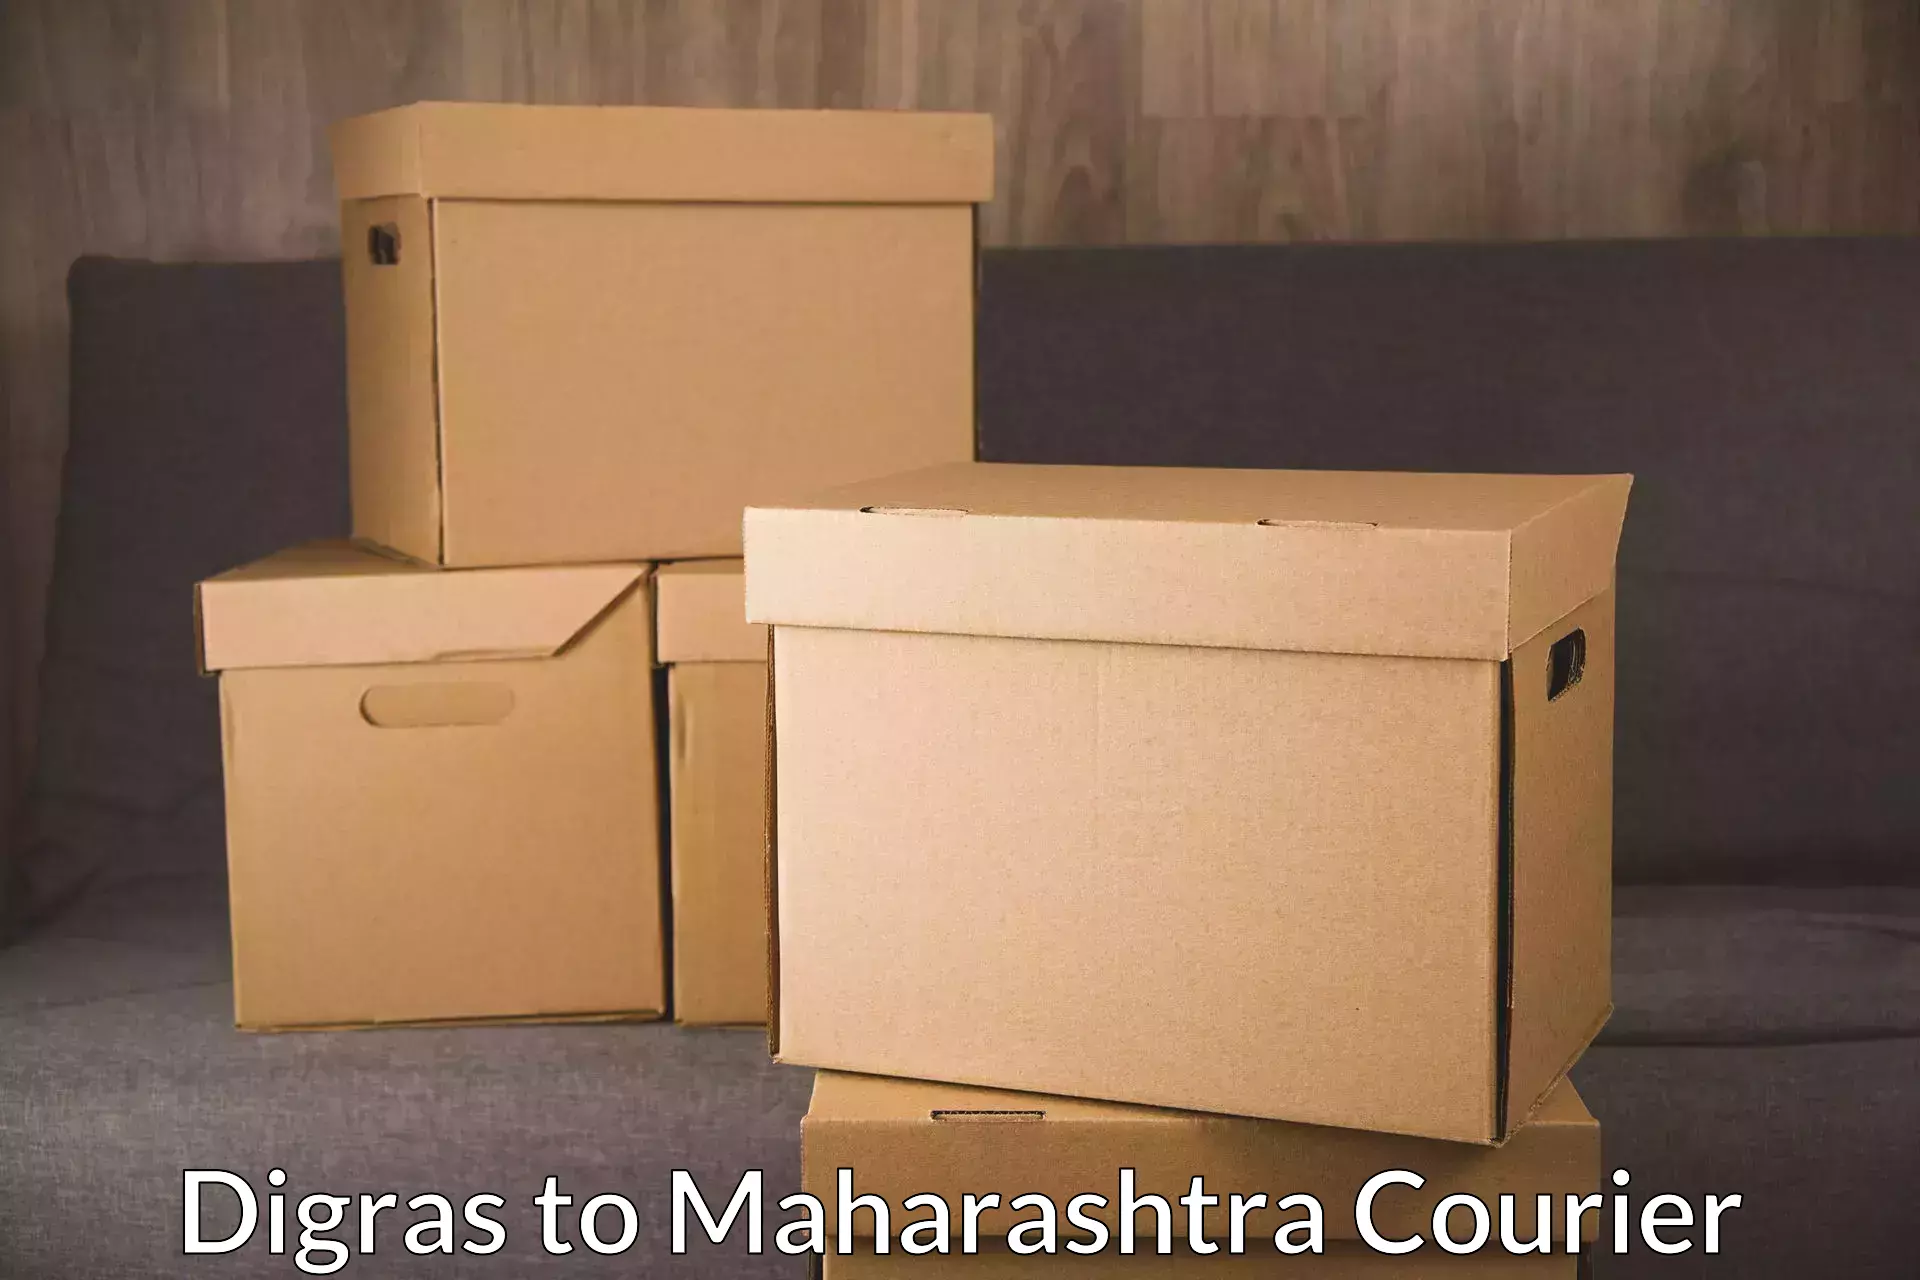 On-demand shipping options Digras to Maharashtra